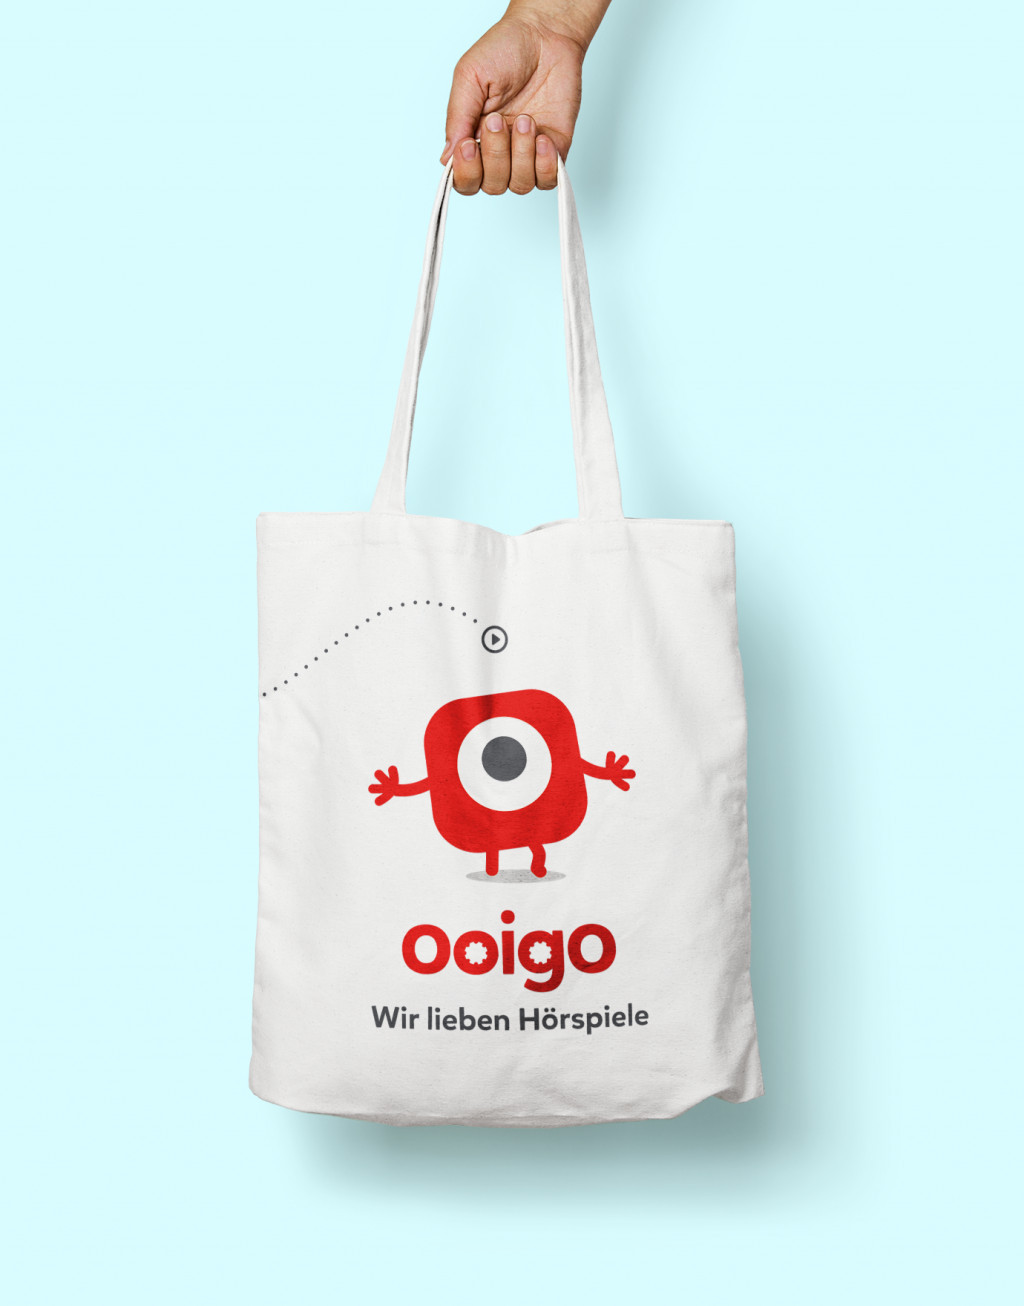 Ooigo carrying bag front